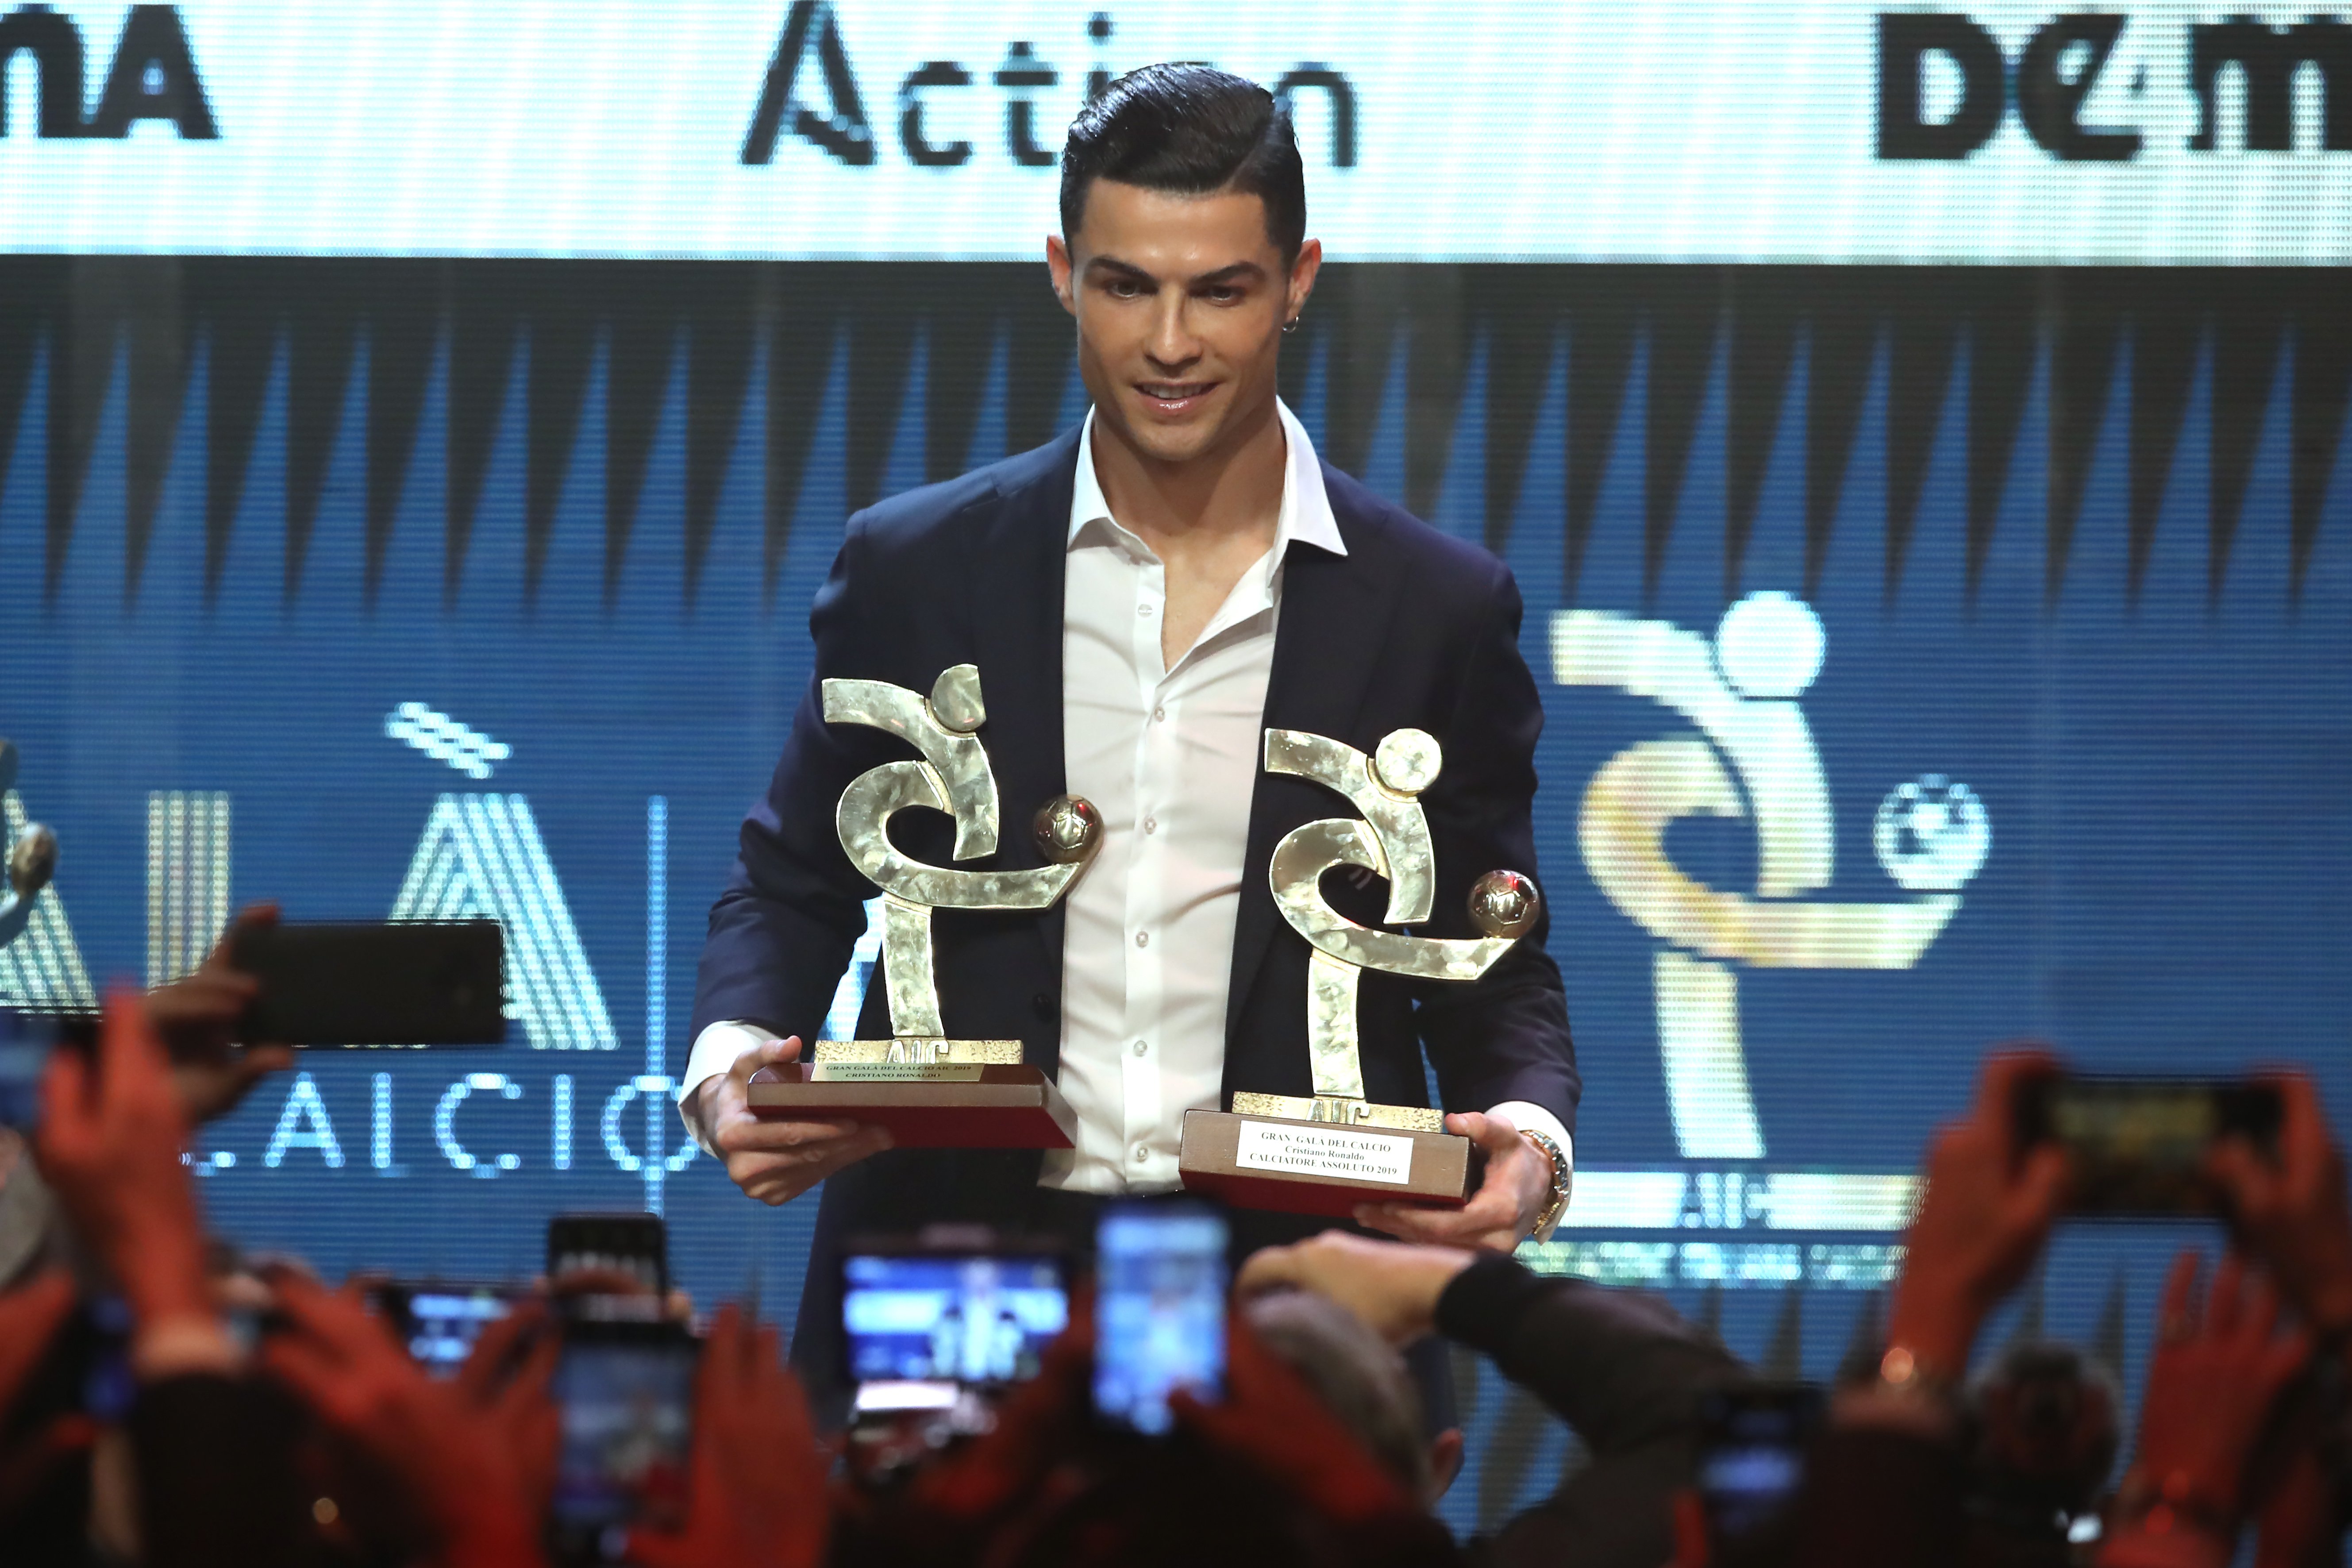 Cristiano sí que se presenta a la gala del 'Calcio' y gana el premio a mejor jugador